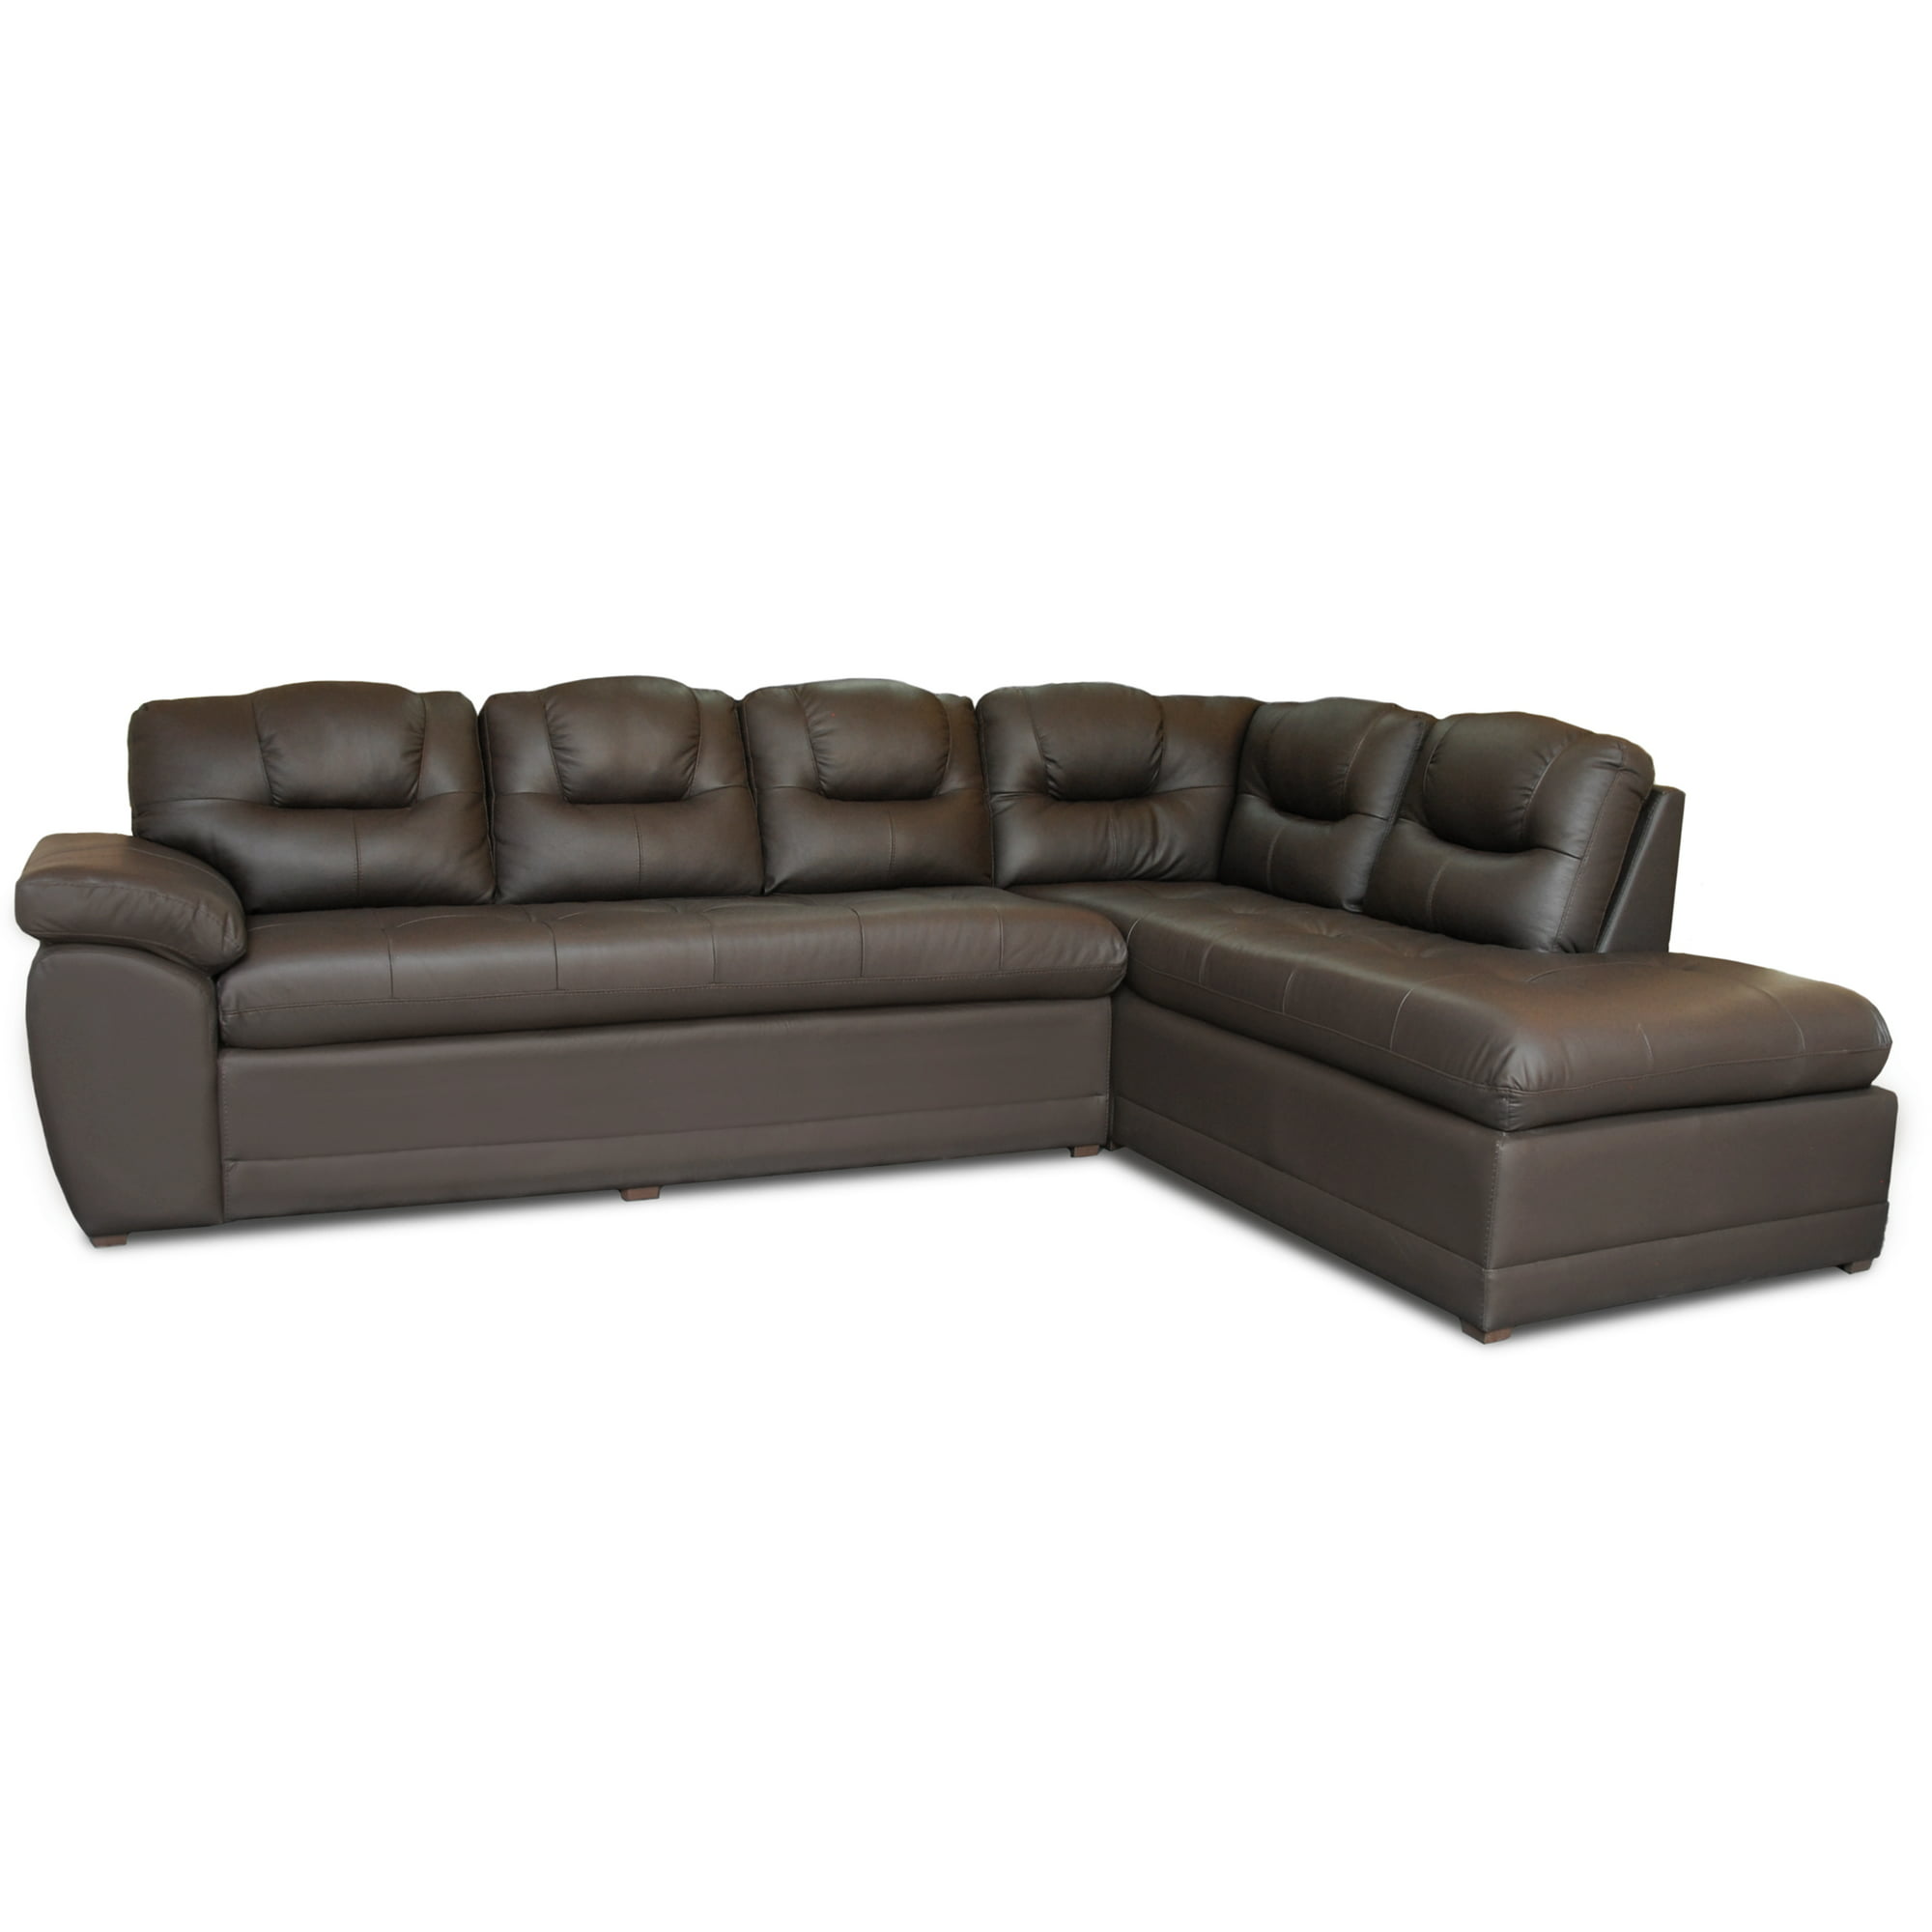 Sala esquinera de piel genuina sofá y cheise long derecho confortopiel verona lado derecho